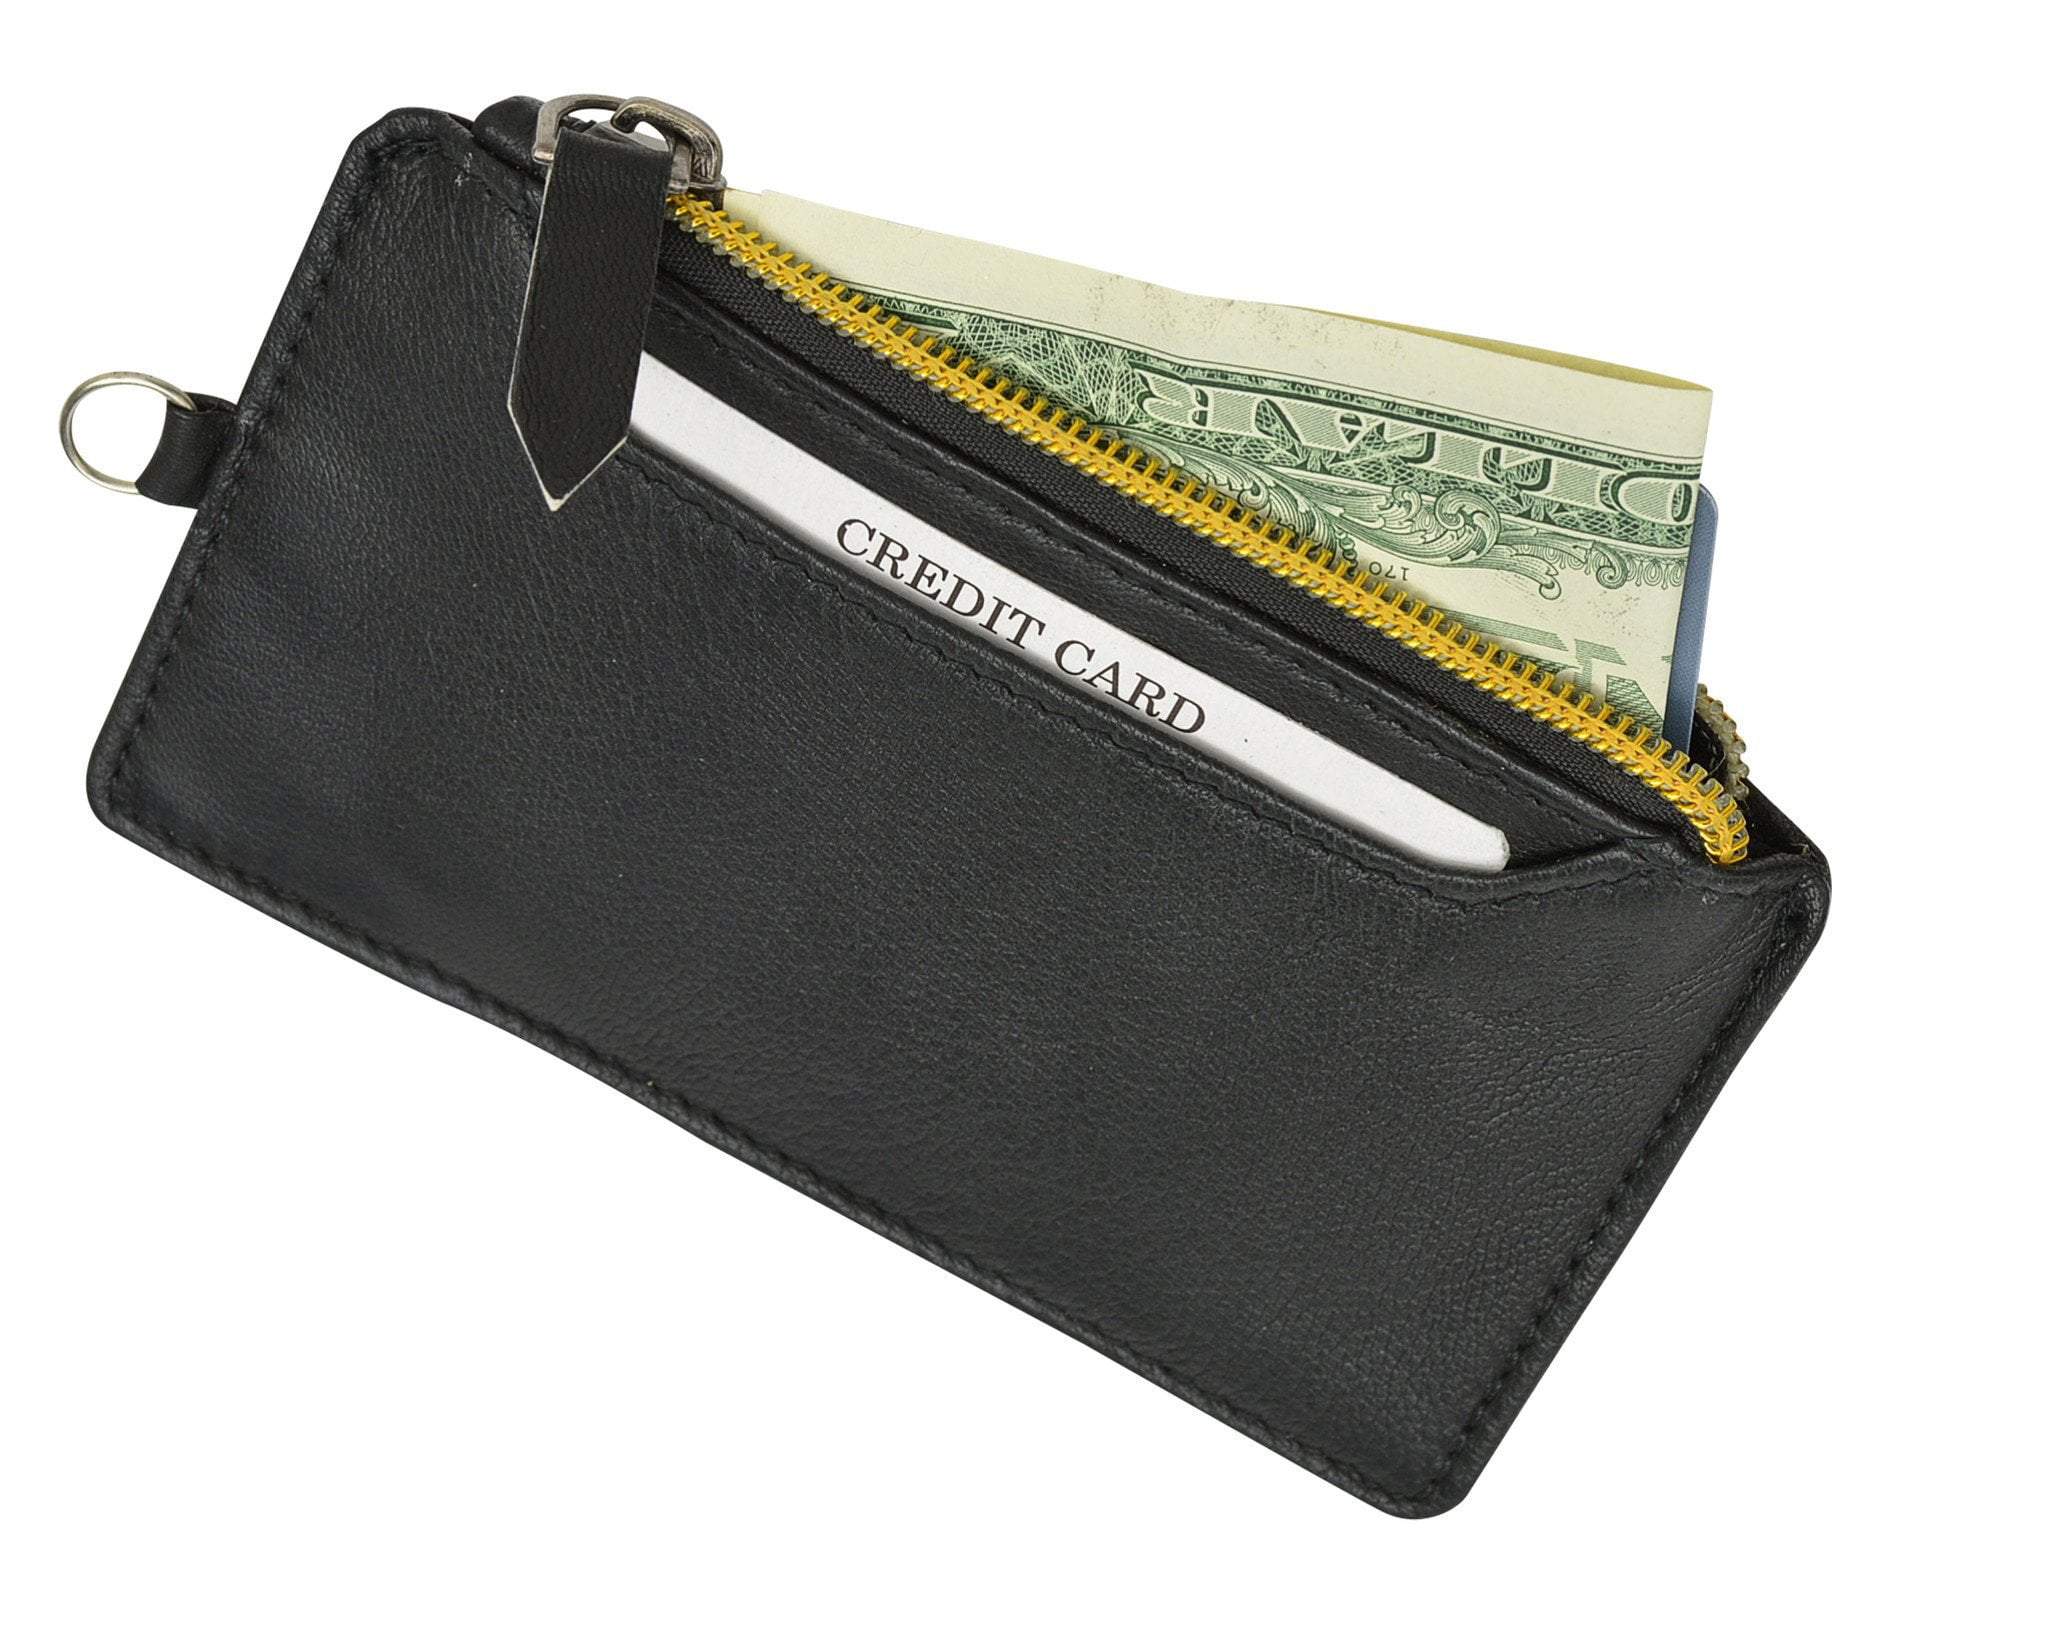 Wallets for Women - Macy's  Wallets for women, Wallet, Bags